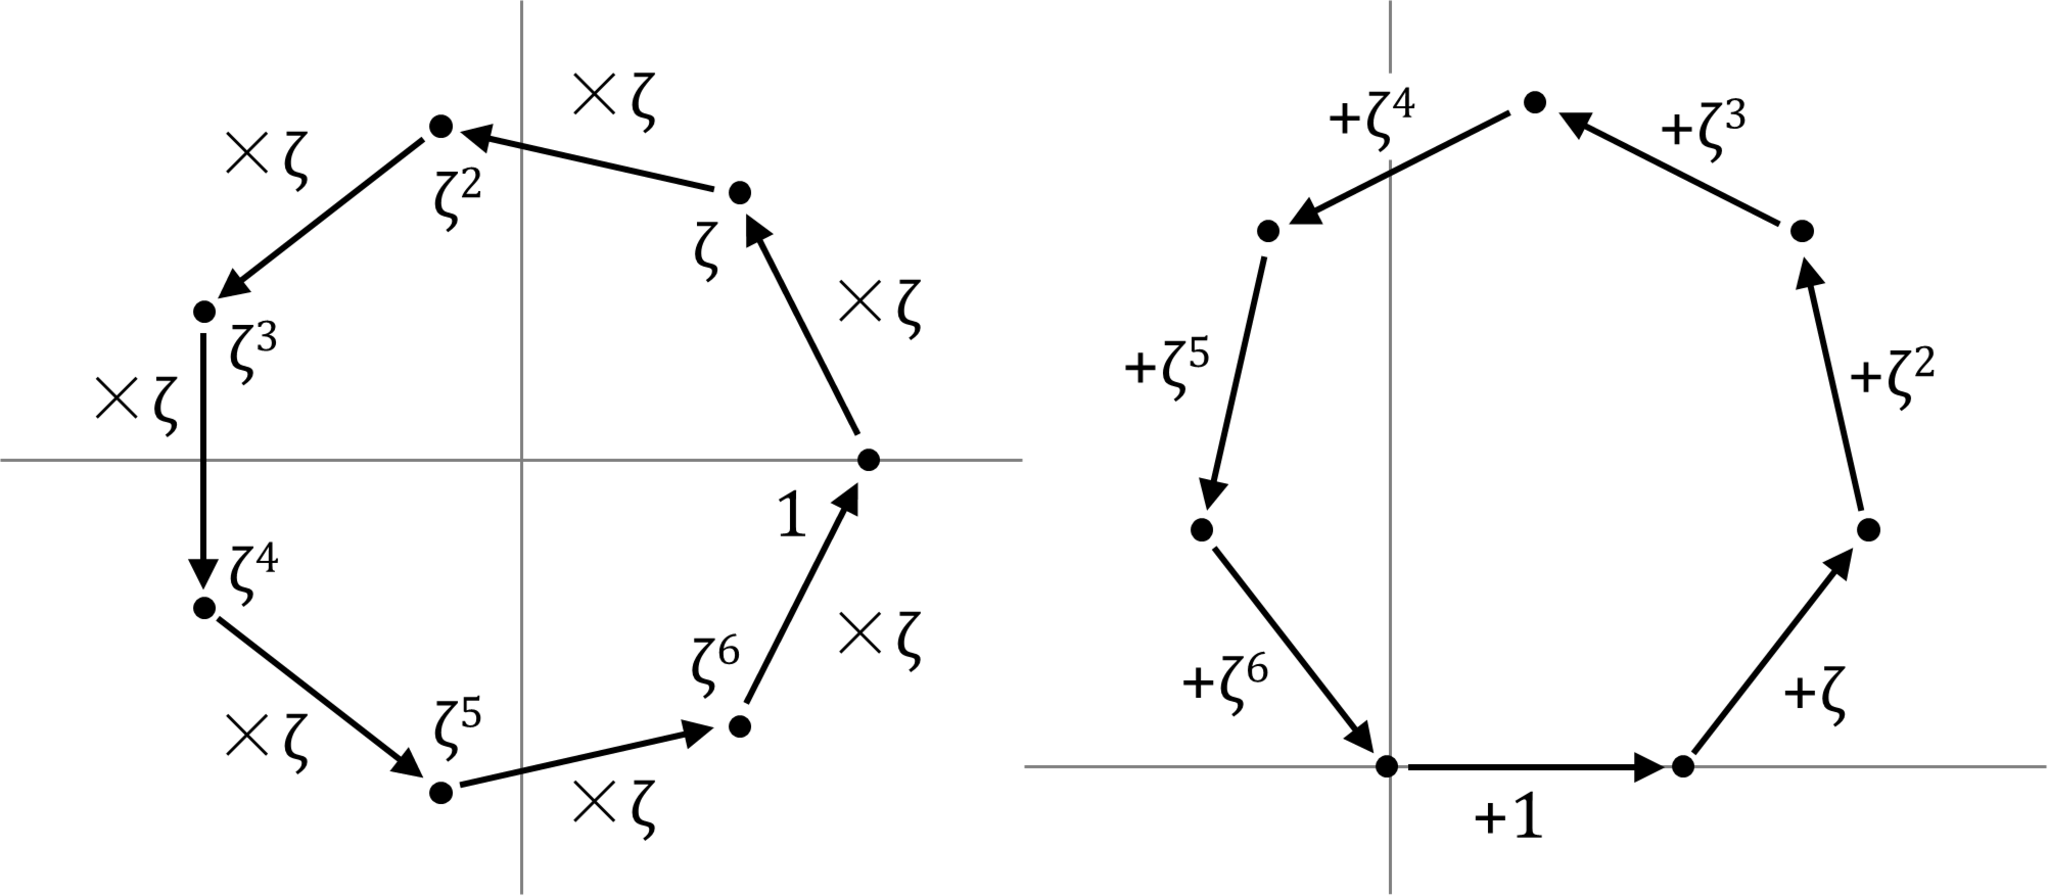 複素平面における1の7乗根(左)とその和(右)